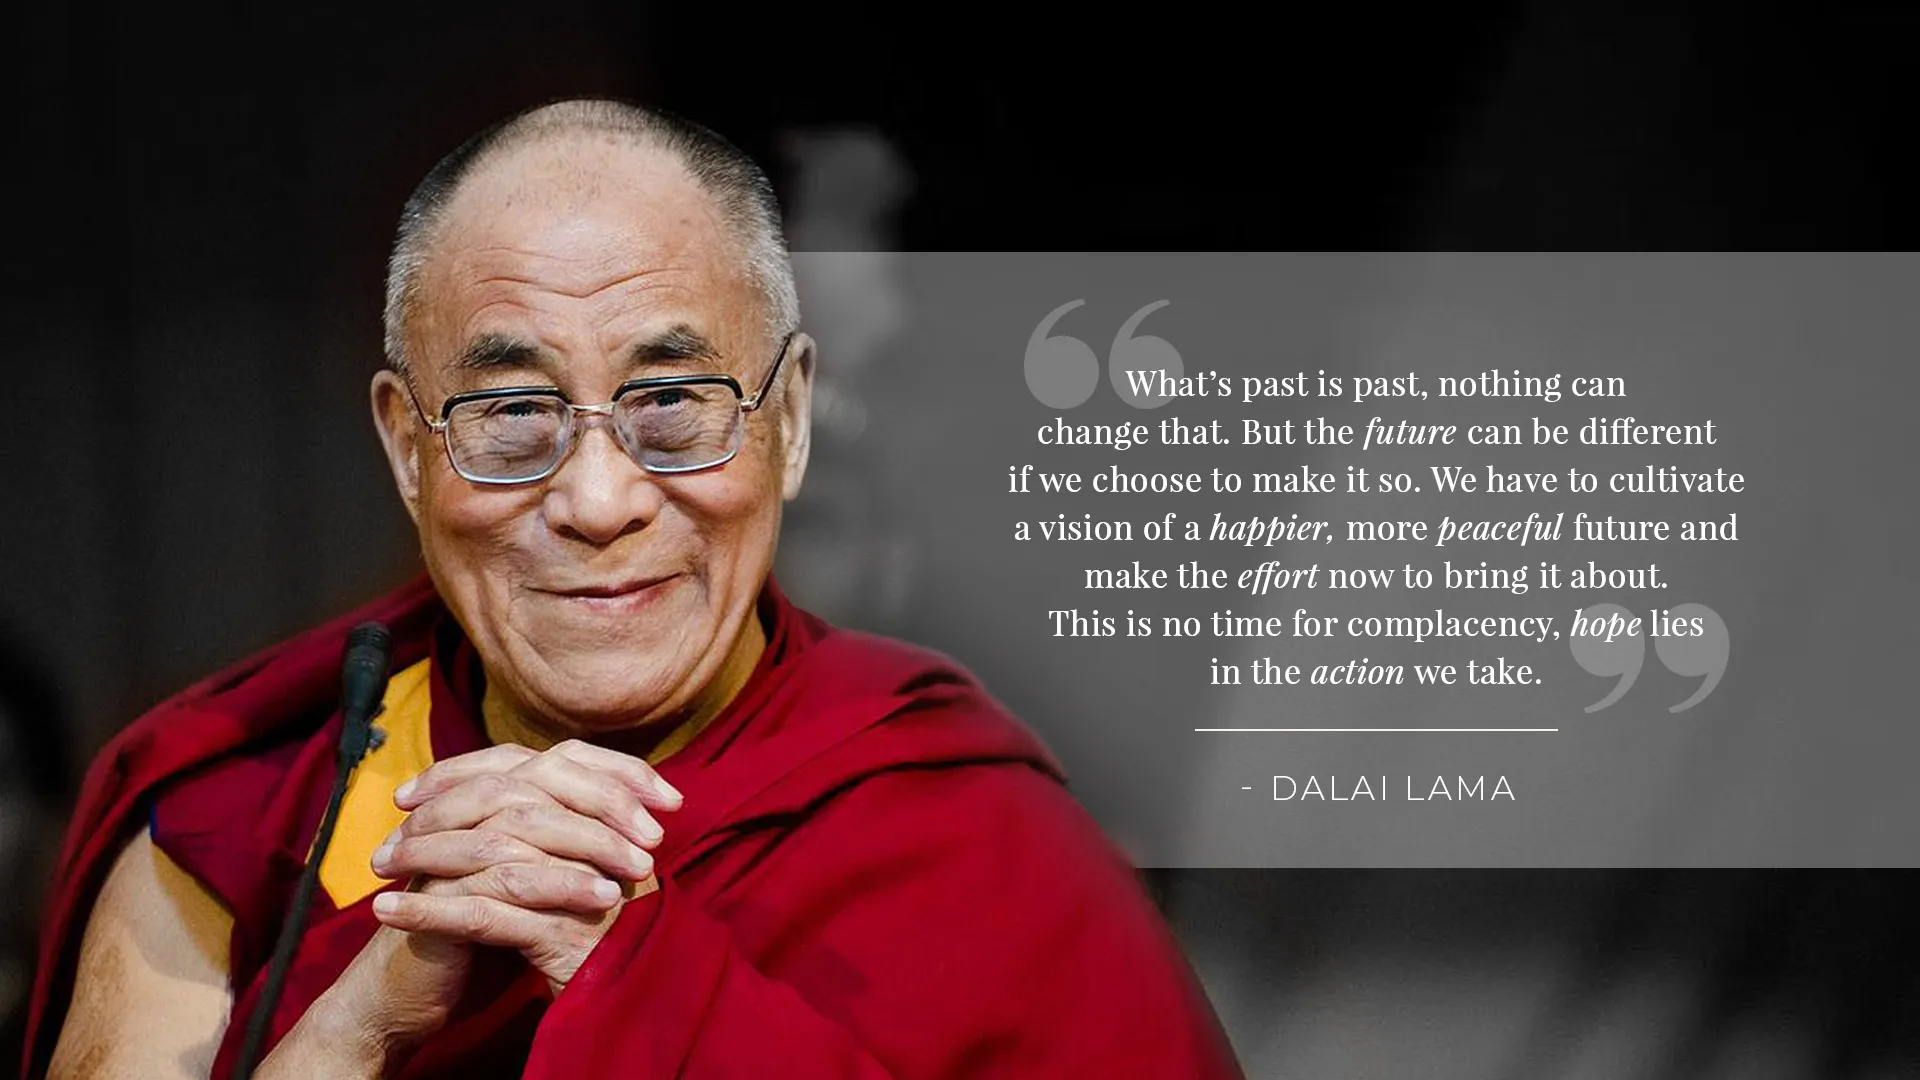 The Dalai Lama, 